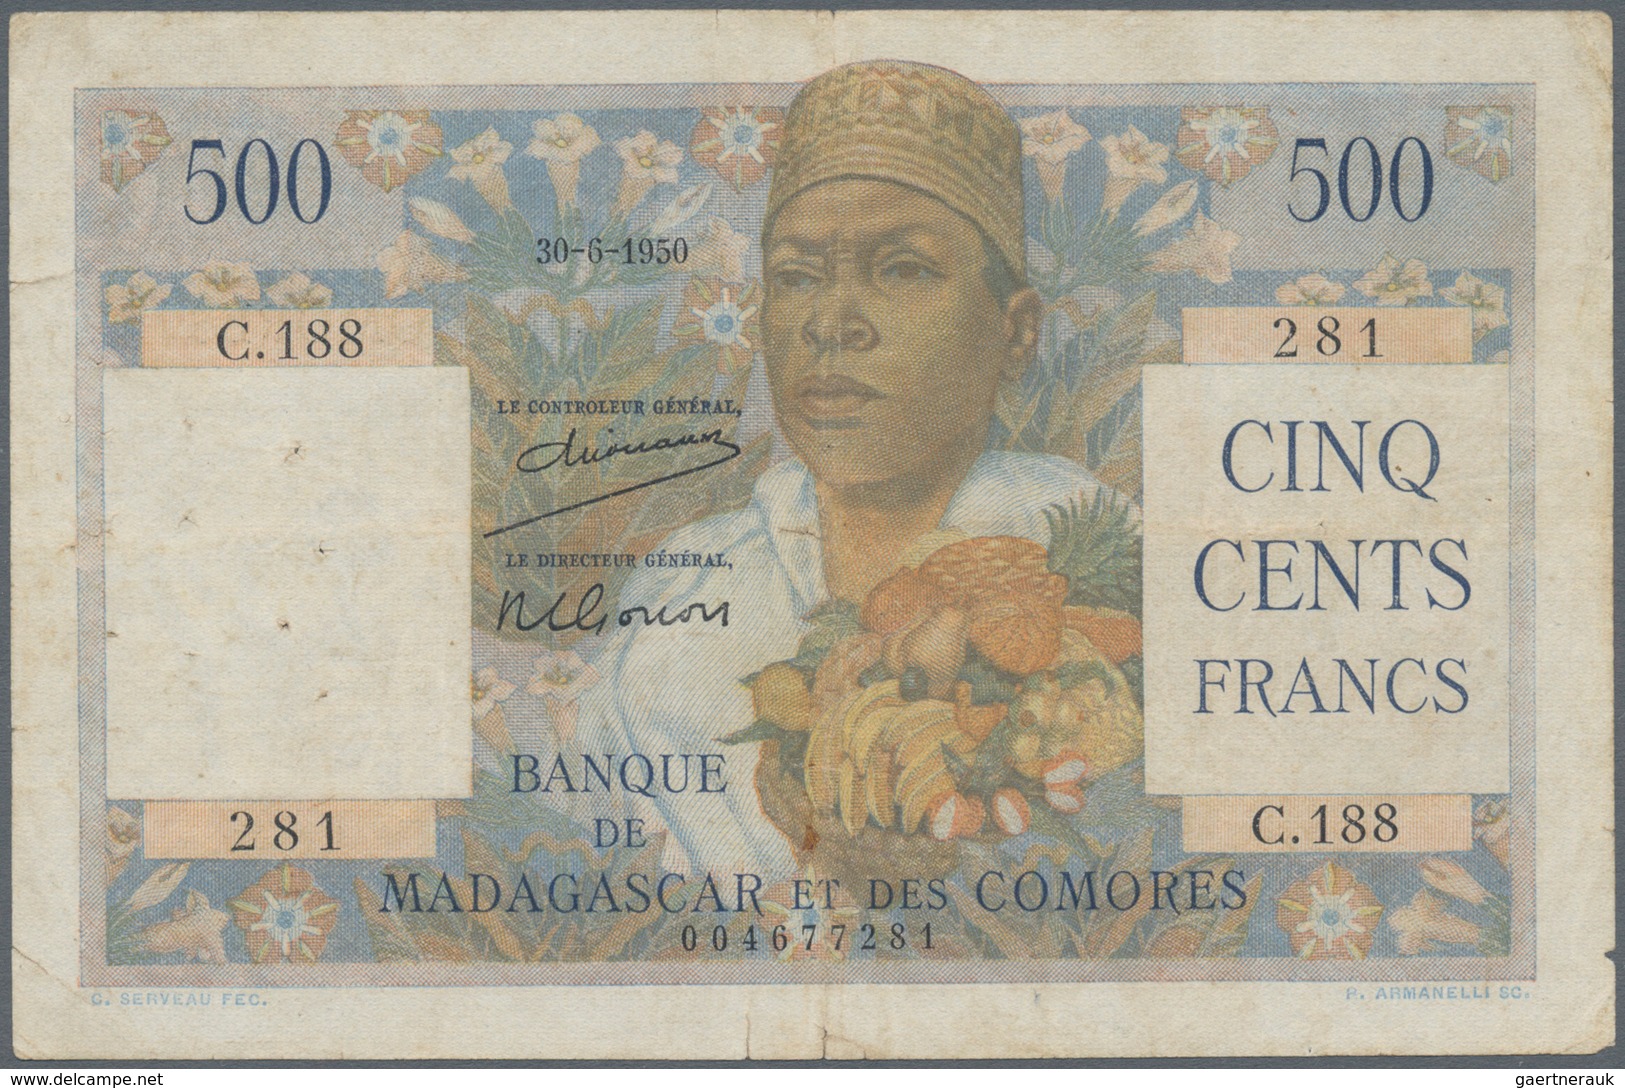 Madagascar: Set Of 2 Notes Madagascar / Comores Containing 500 Francs 1950 P. 47a, Used With Folds, - Madagascar